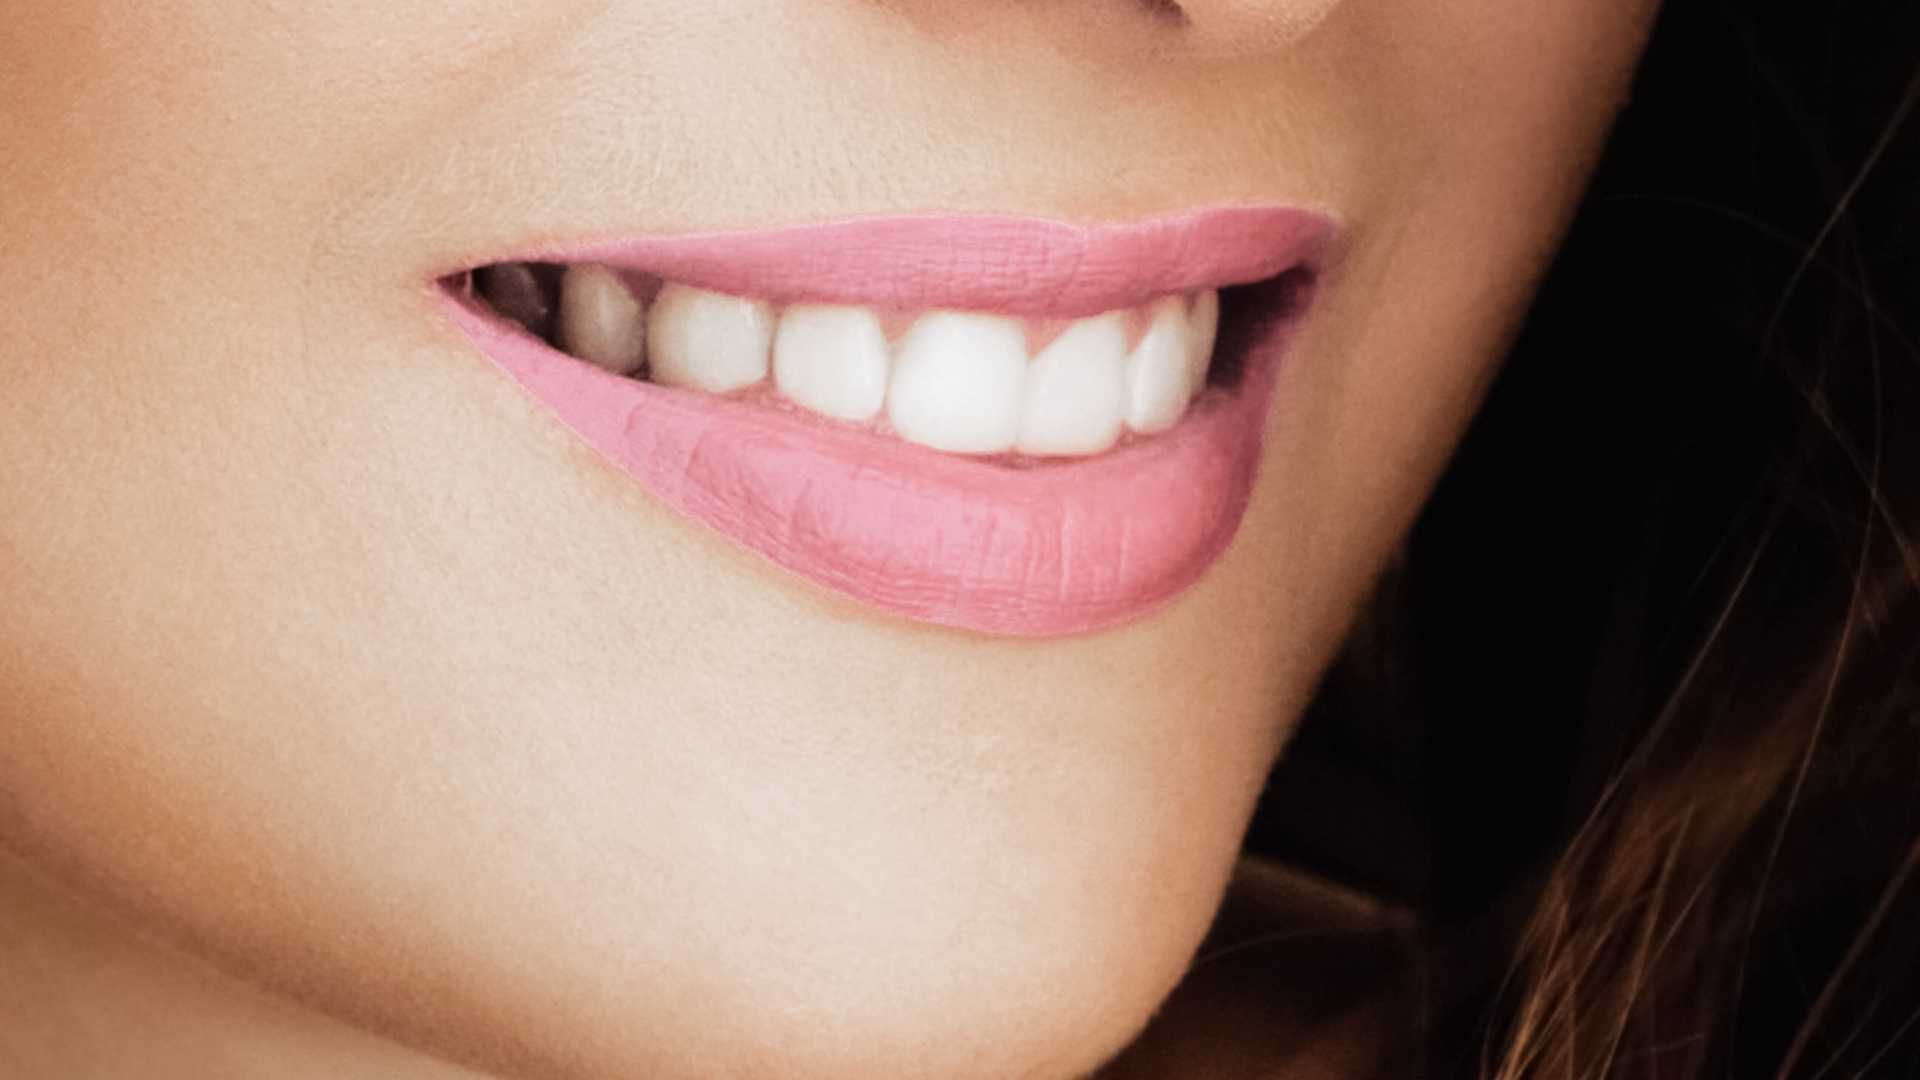 پرکردن دندان یک سطحی با کامپوزیت آلمانی